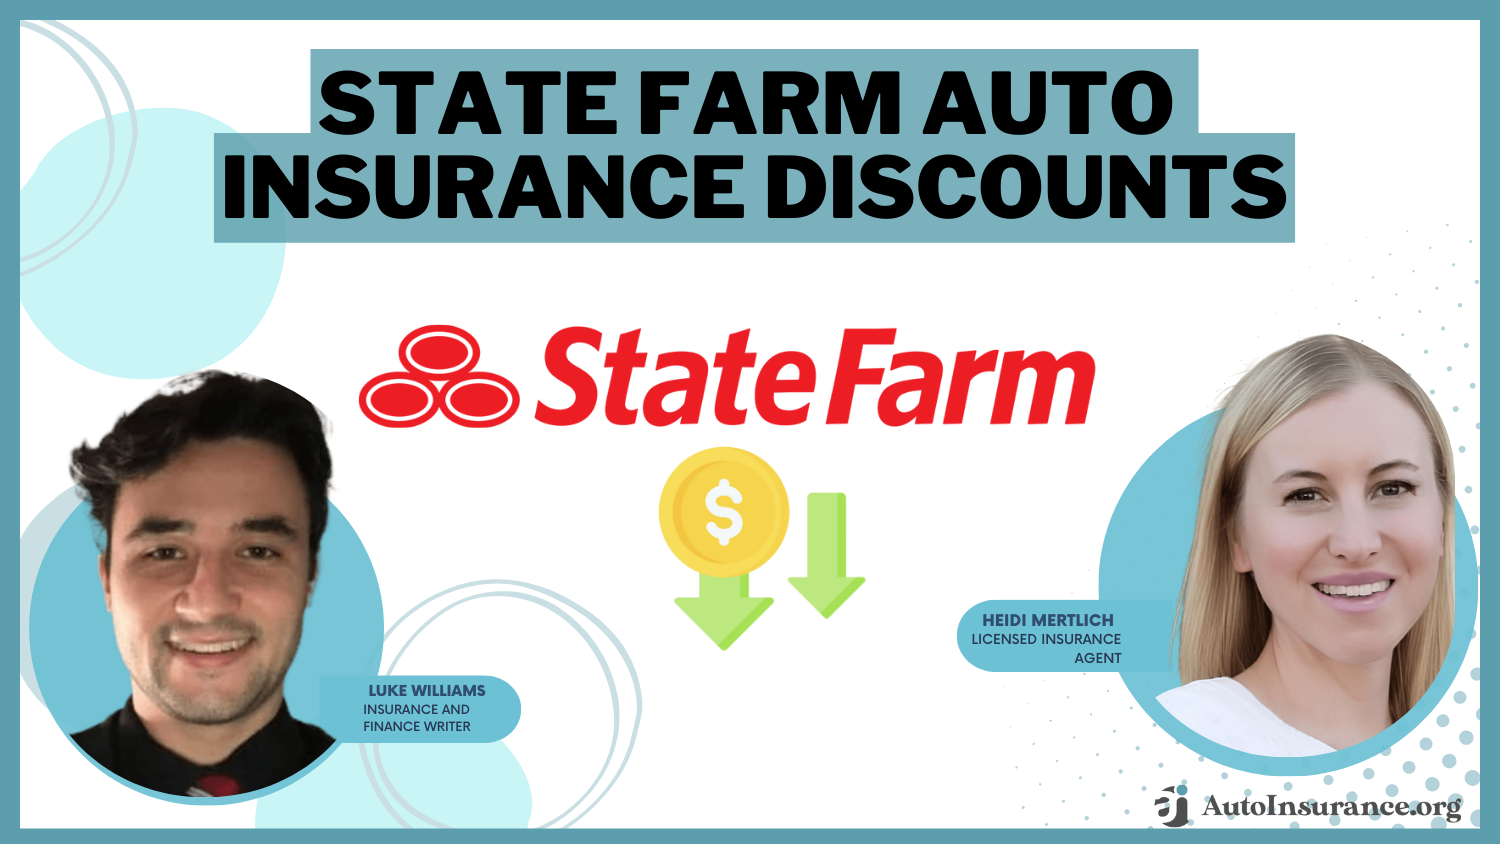 State Farm Auto Insurance Discounts